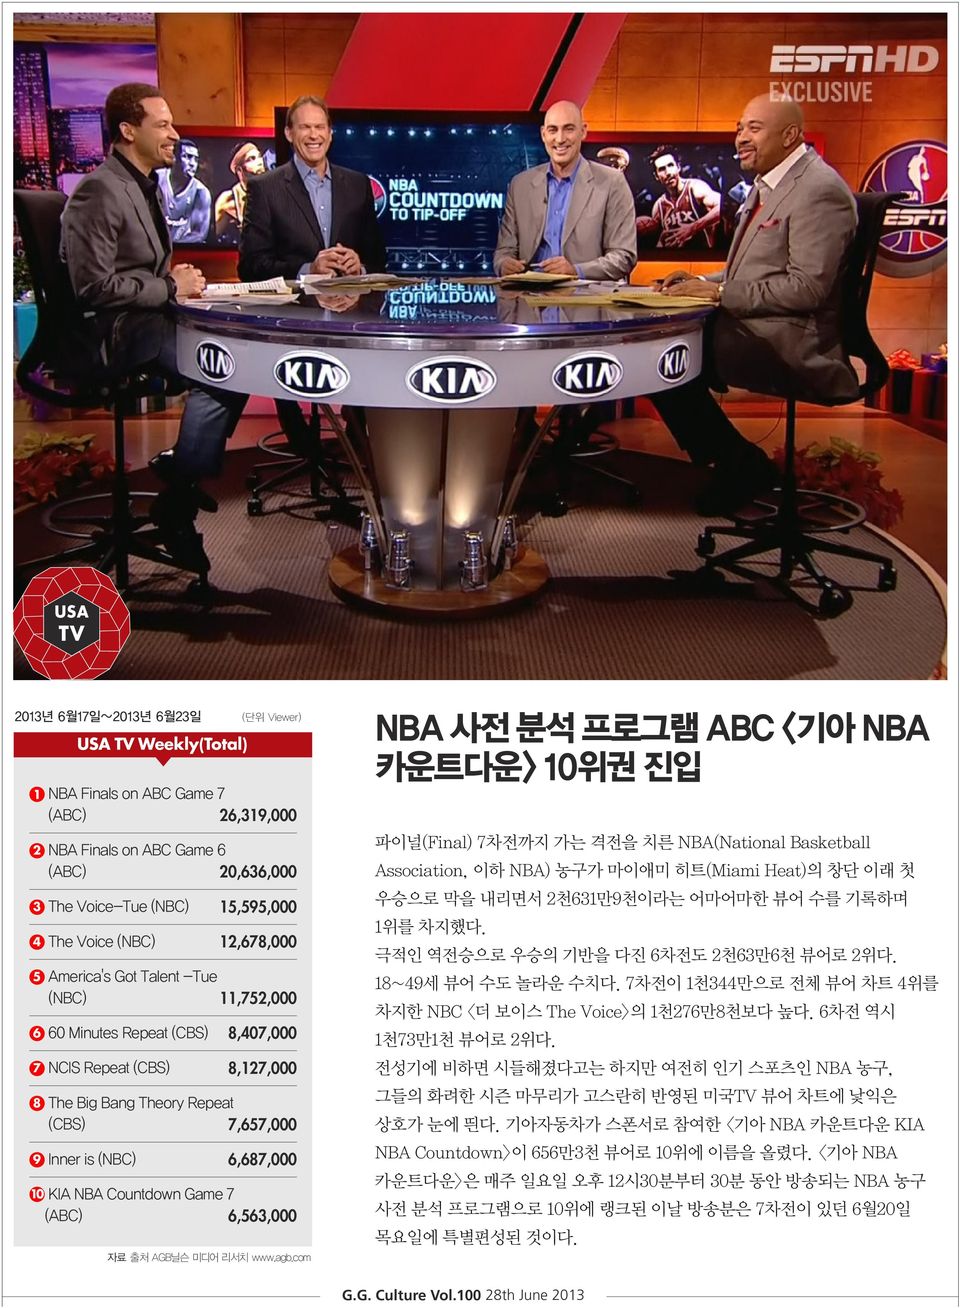 10 KIA NBA Countdown Game 7 (ABC) 6,563,000 자료 출처 AGB닐슨 미디어 리서치 www.agb.